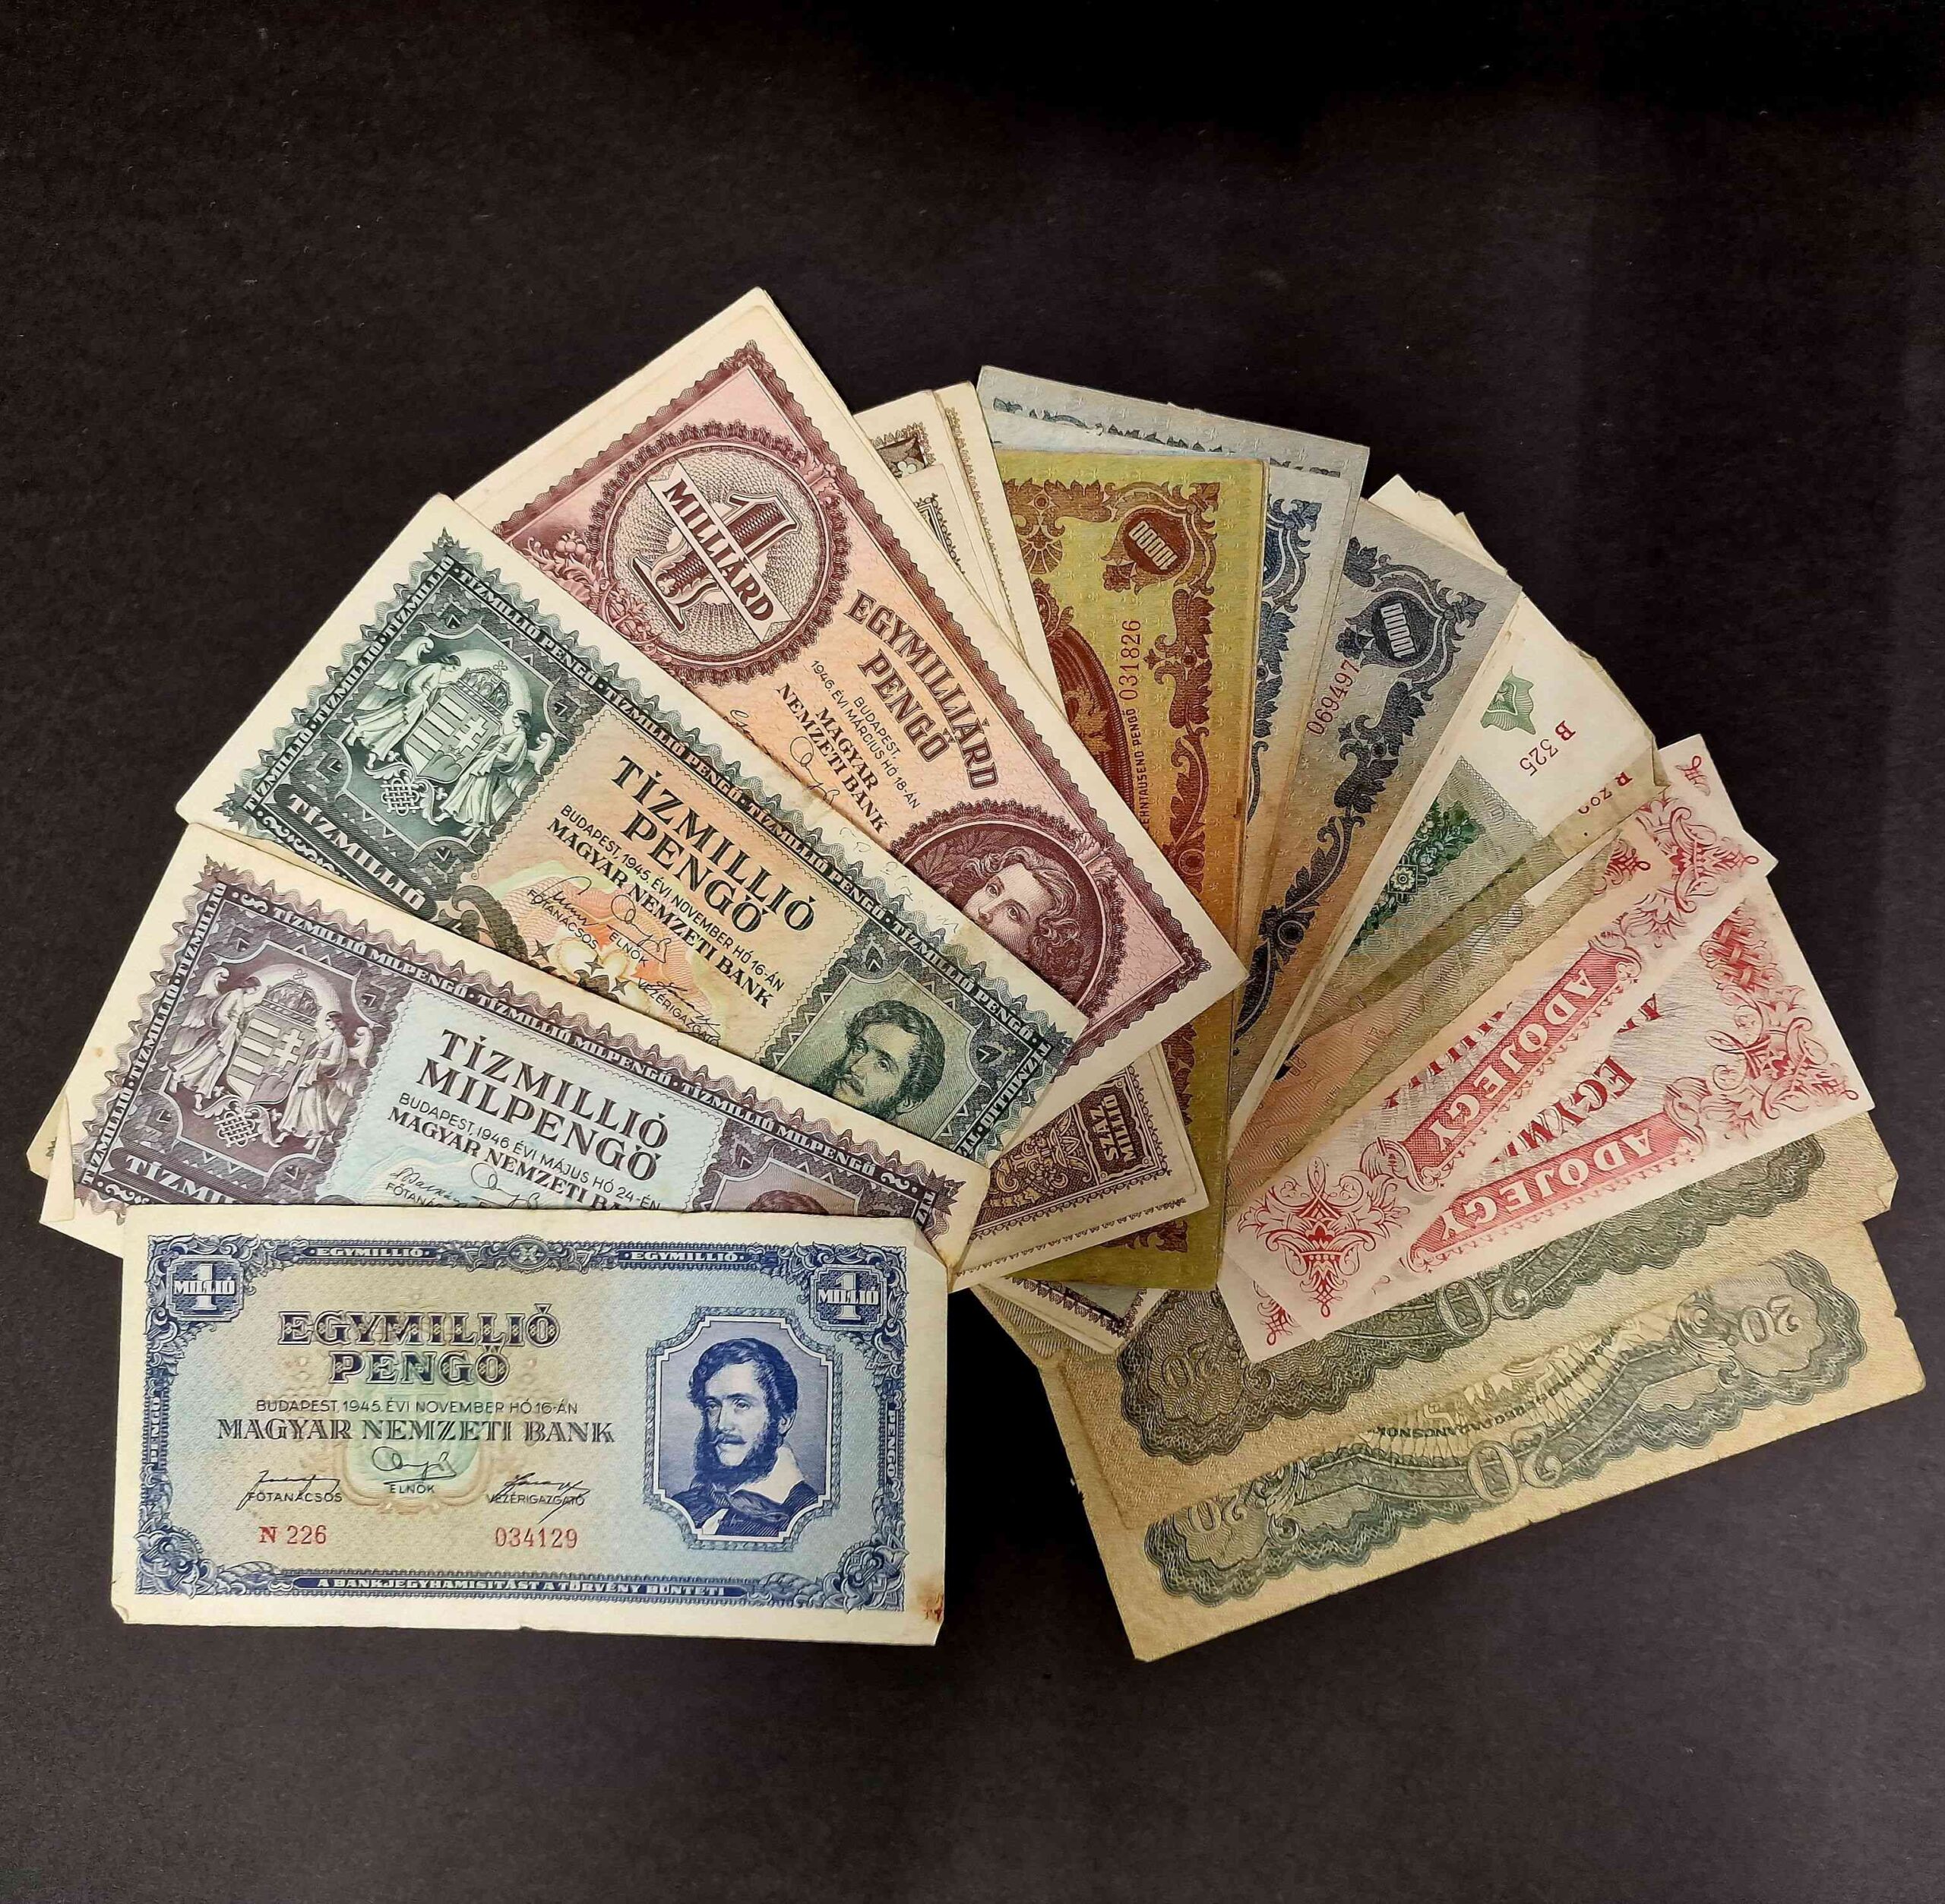 Inflációs pénzek a Göcseji Múzeum numizmatikai gyűjteményében